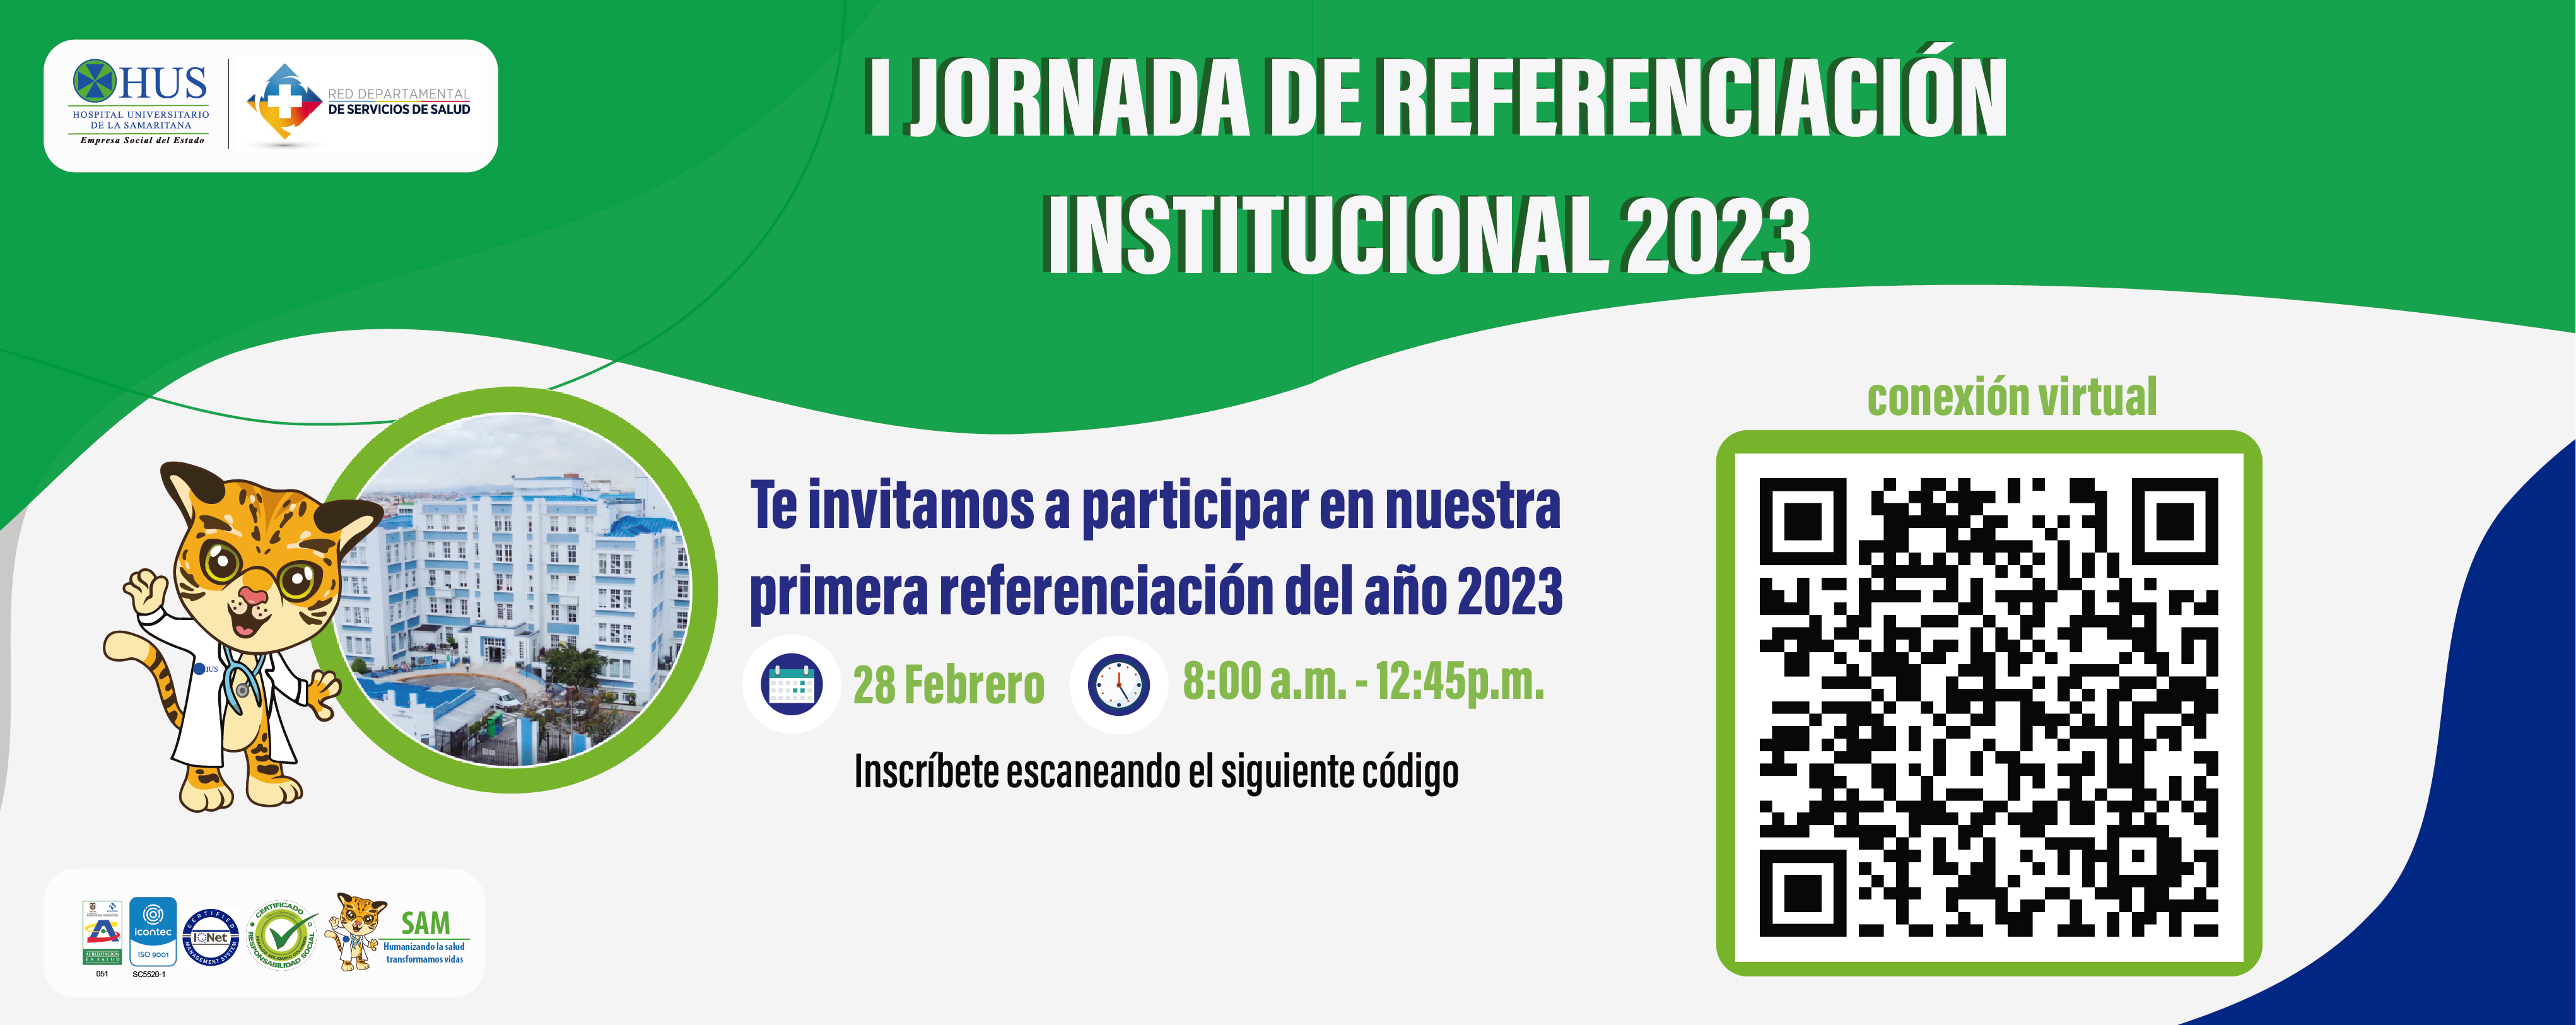 I JORNADA DE REFERENCIACION INSTITUCIONAL 2023